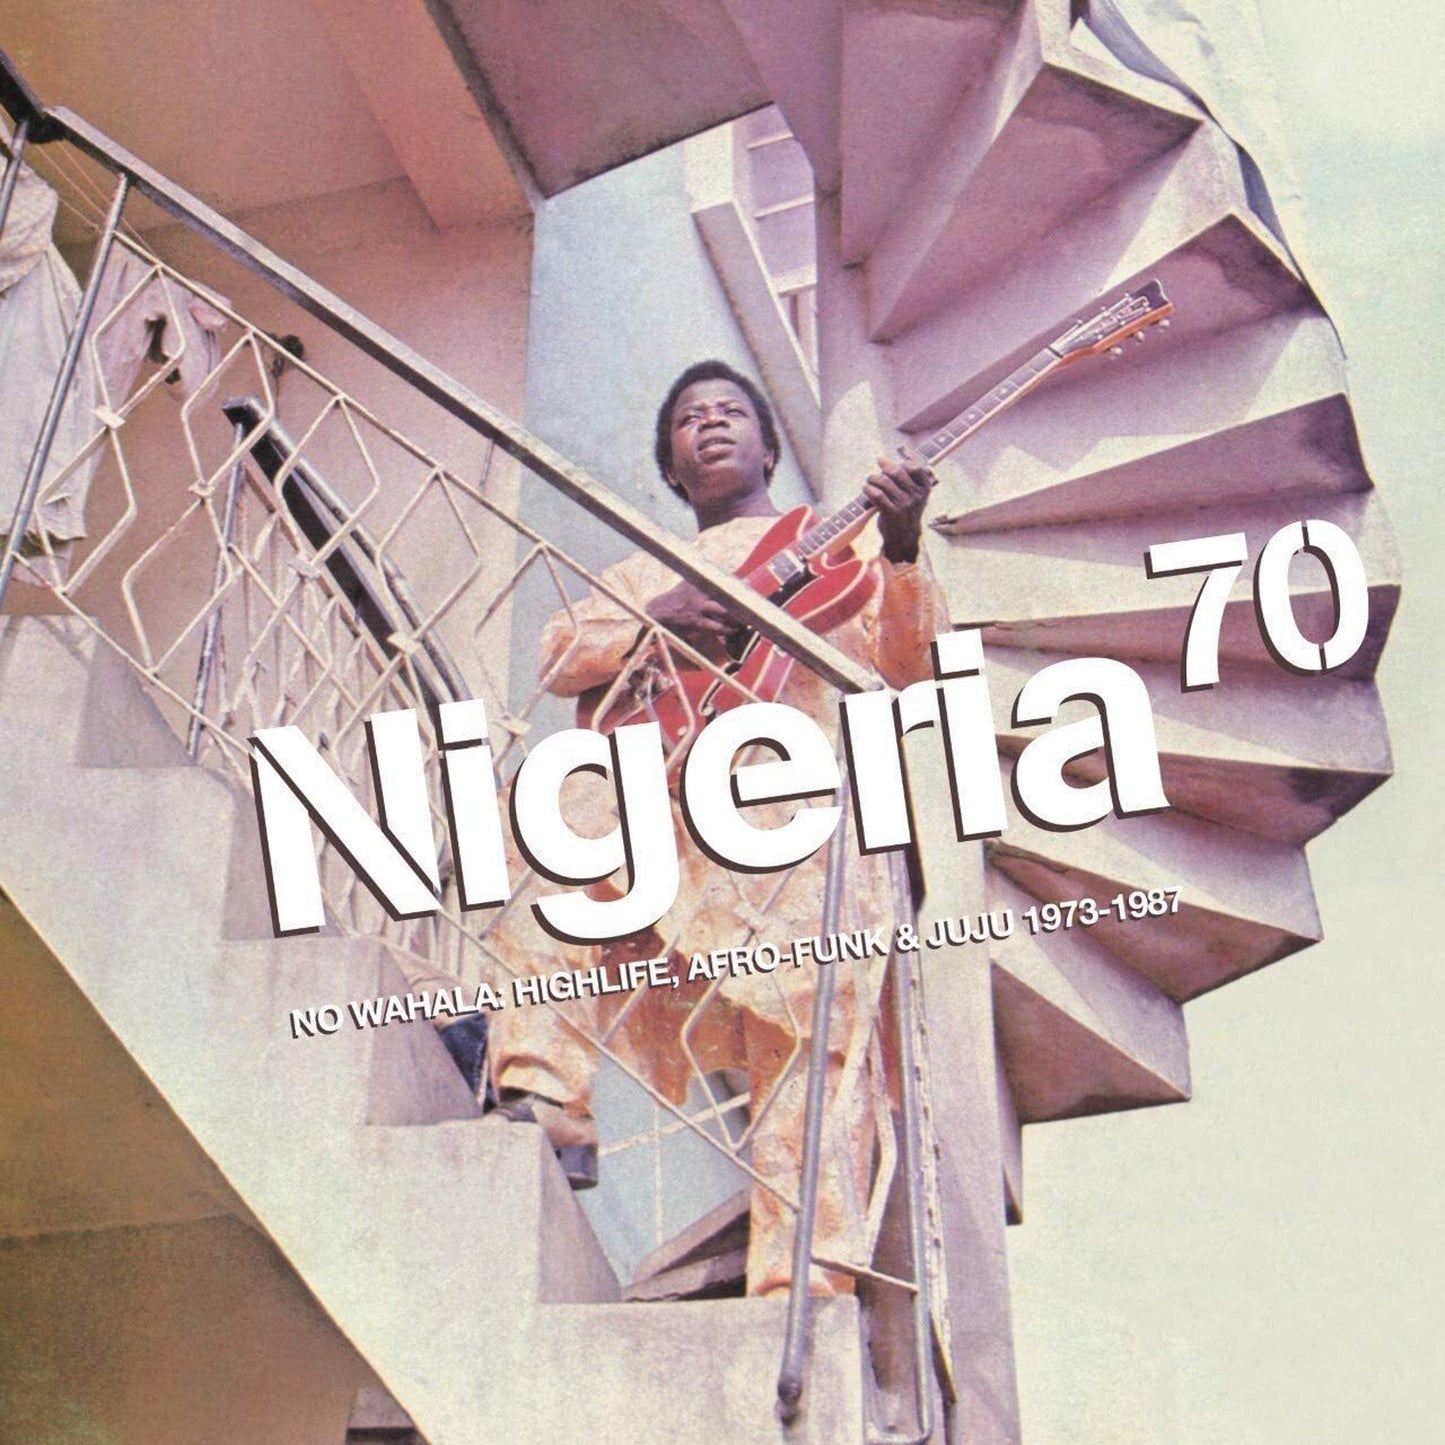 【LP】V.A - NIGERIA 70: NO WAHALA: HIGHLIFE, AFRO-FUNK & JUJU 1973-1987 -2LP-